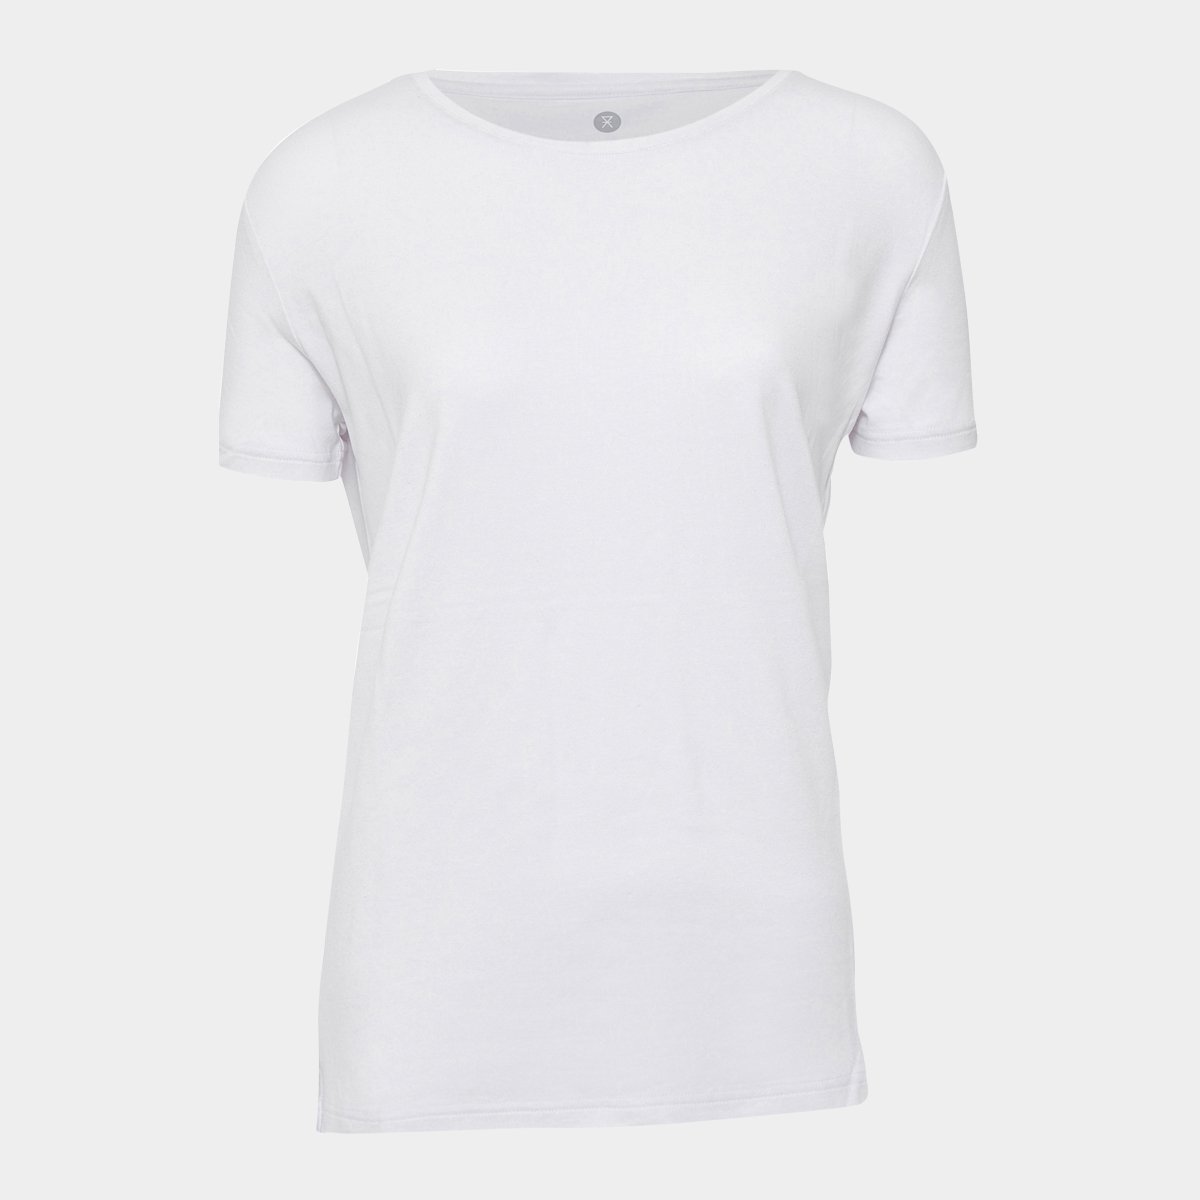 Billede af Hvid basic bambus T-shirt til kvinder fra JBS of Denmark, XL hos Bambustøj.dk